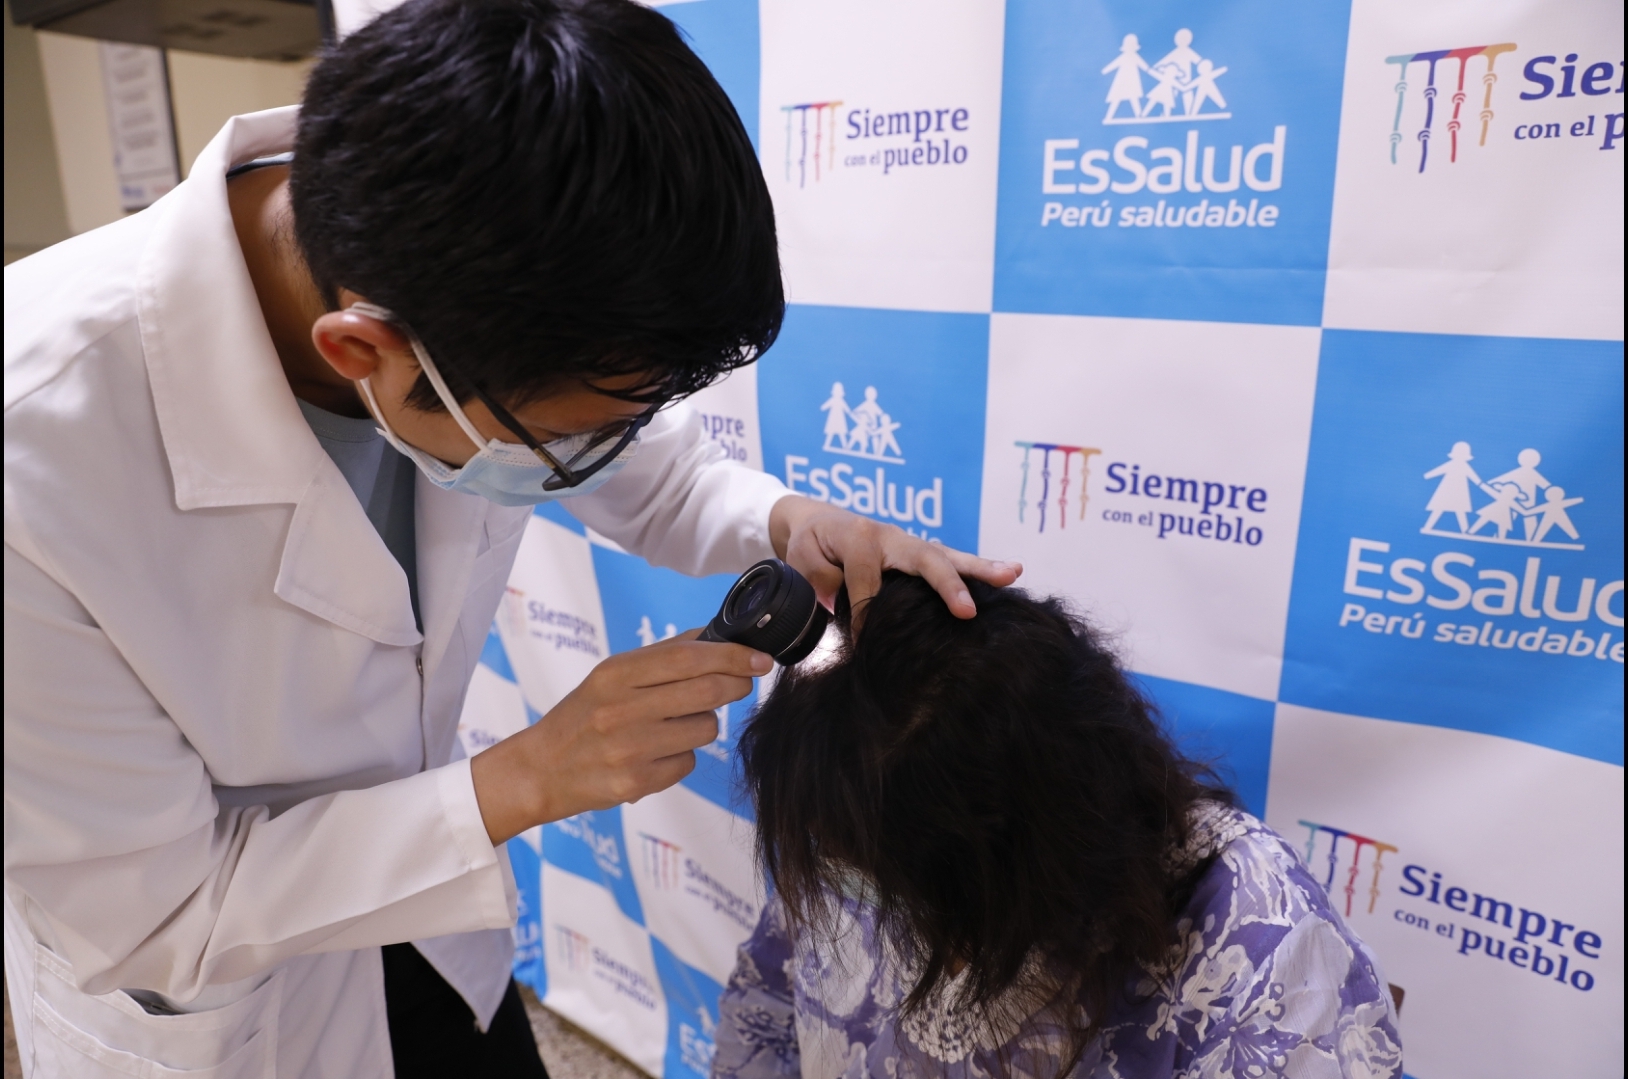 Festival Astrolabio dos semanas EsSalud: 60% de mujeres reportan caída del cabello tras sufrir COVID-19 -  Essalud